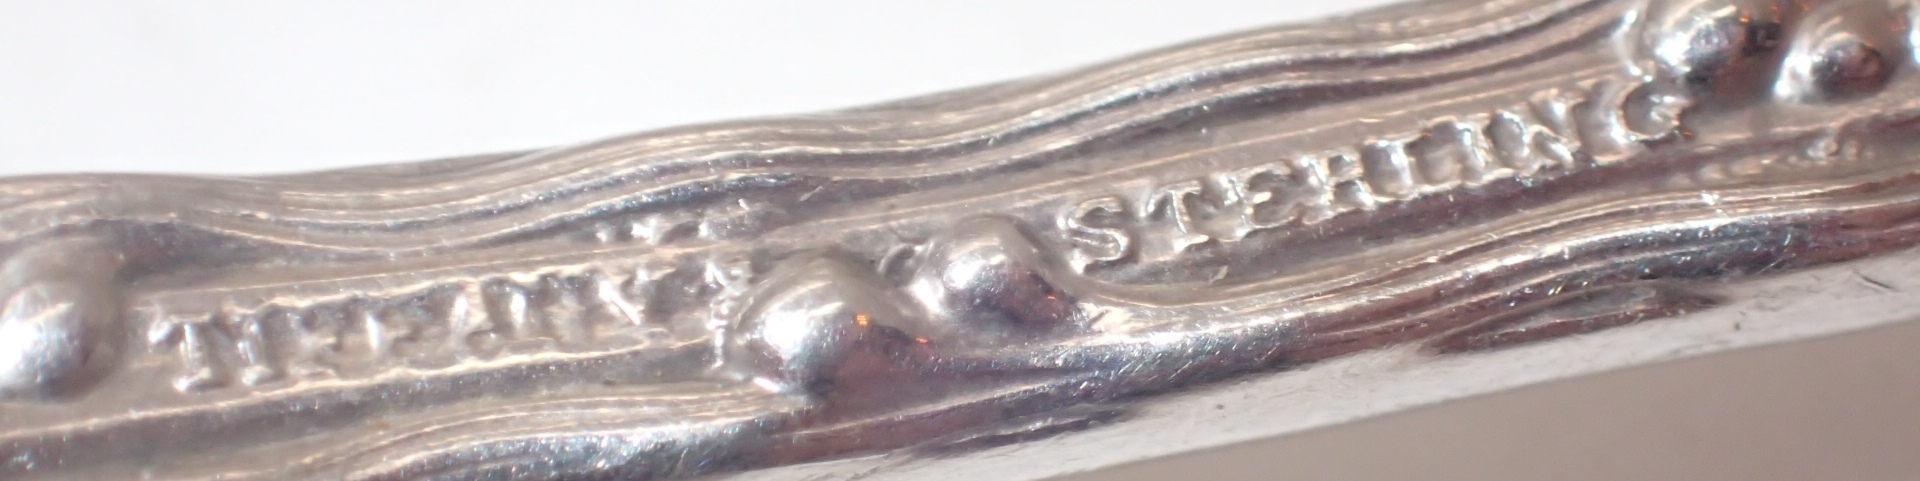 Fancy Tiffany sterling silver preserve spoon 32g - Bild 3 aus 3